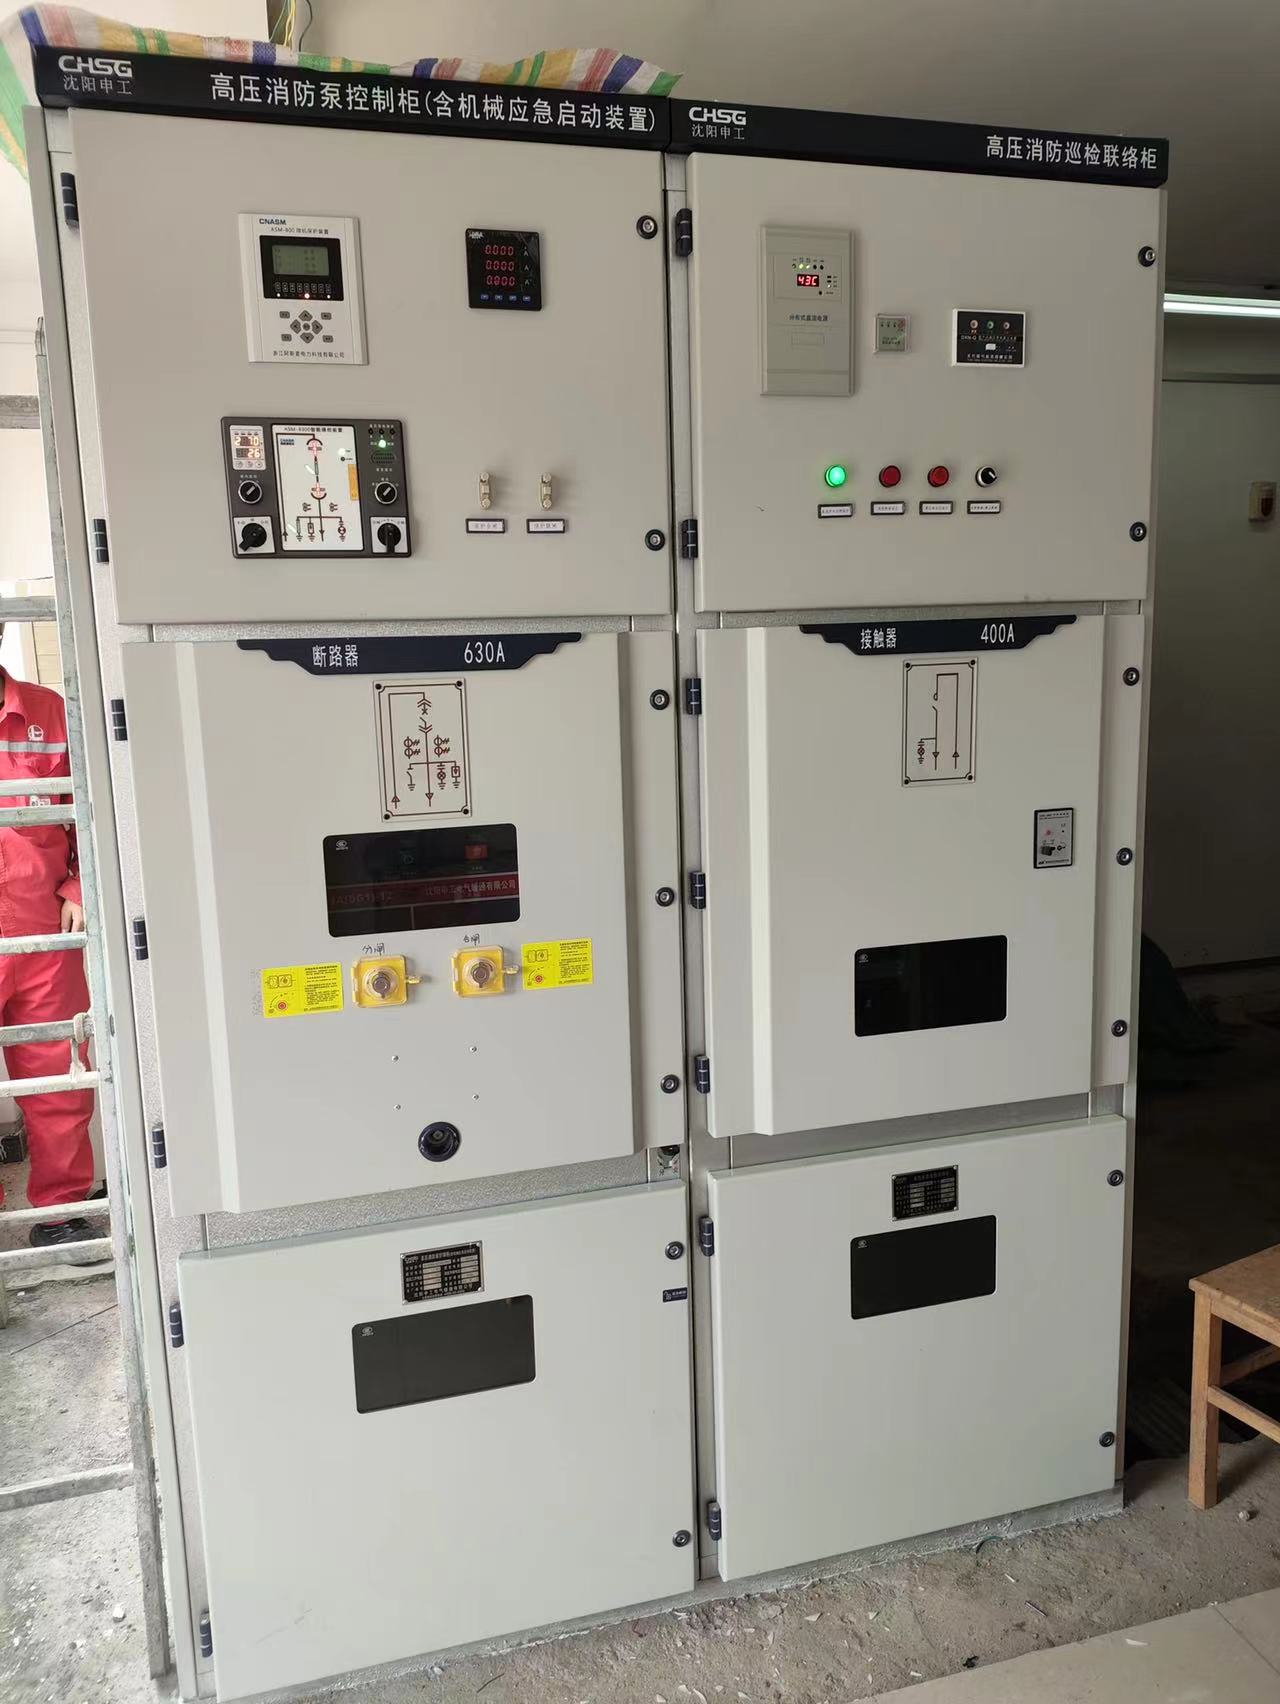 四川中京燃气技改项目高压消防泵控制柜（含机械应急启动装置），高压消防巡检联络柜